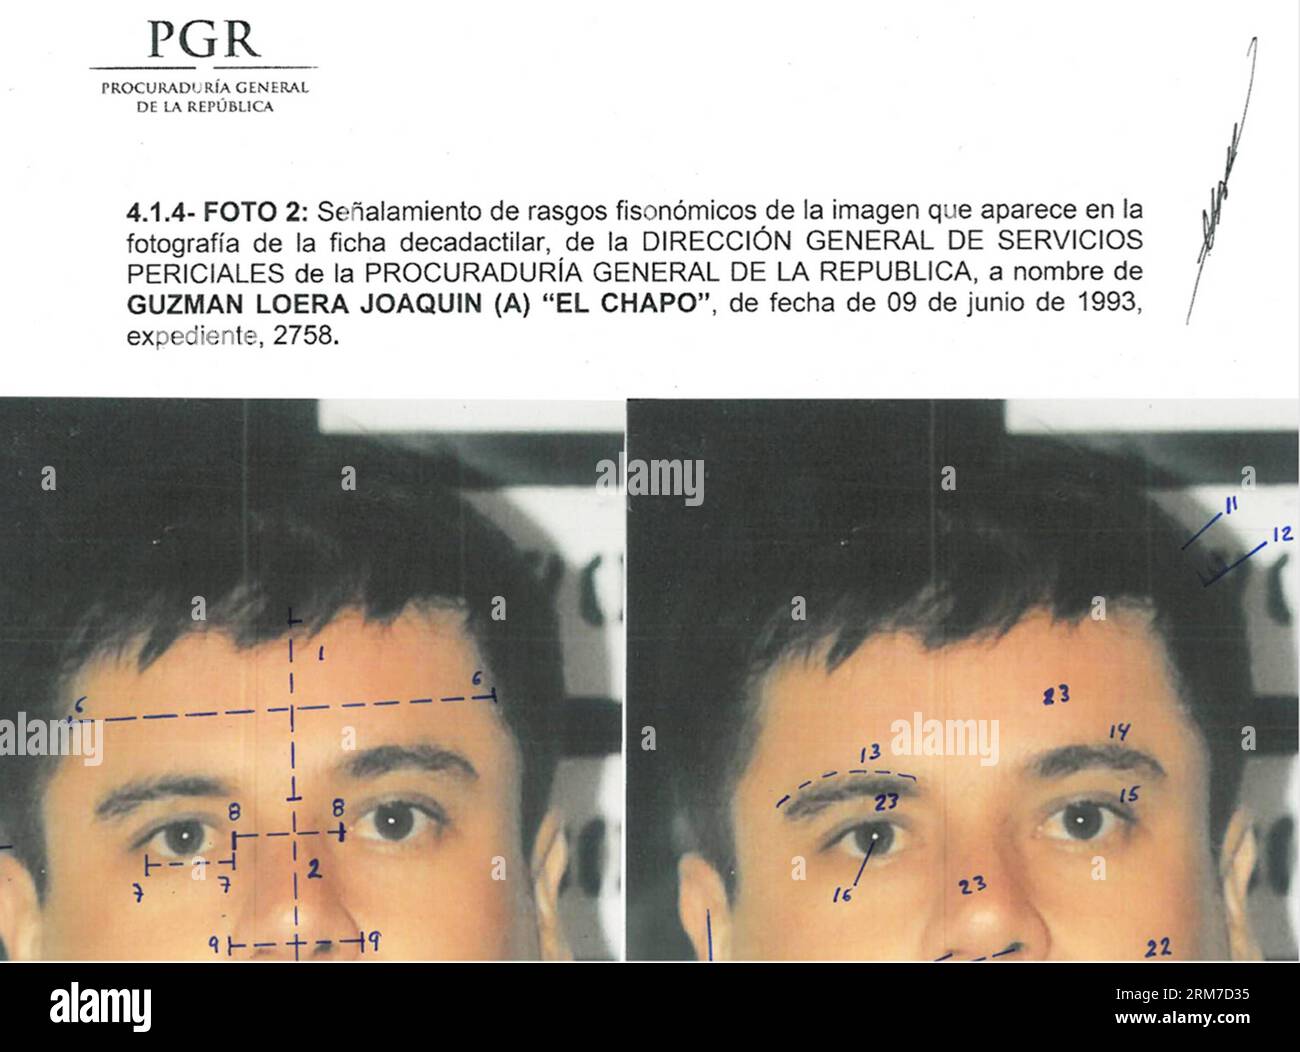 (140226) -- MEXICO, 26 février 2014 (Xinhua) --cette combinaison de photographies publiées par le Bureau du procureur général (PGR) du Mexique avec des marques cartographiques d'identification faites par la source pour souligner les similitudes dans les mesures du visage, montre Joaquin El Chapo Guzman, en utilisant des images faites de ses détentions de 1993. Le chef du cartel Sinaloa a été soumis à un prélèvement buccal, à une étude d'identité phisiognomique et à un test de 10 empreintes digitales. Mardi, les tribunaux fédéraux au Mexique ont officiellement inculpé Joaquin El Chapo Guzman, le chef capturé du cartel de la drogue de Sinaloa, de crime organisé et de trafic de drogue. (Xinhua/Mexi Banque D'Images